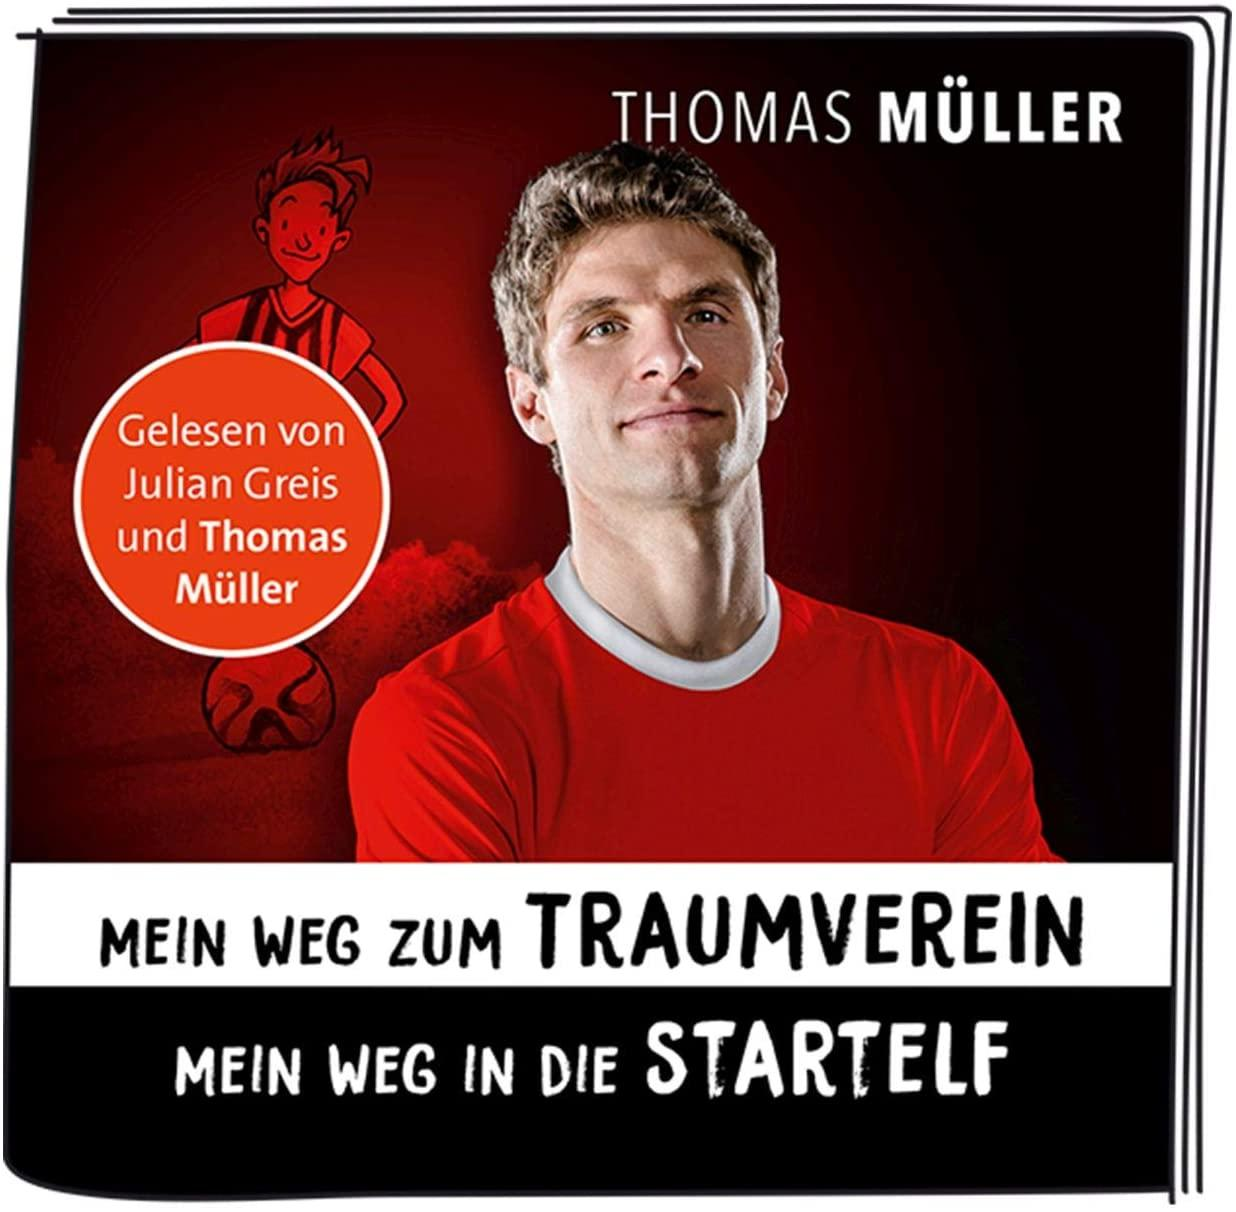 BOXINE Tonie-Figur: Weg Traumverein zum Mein Hörfigur Müller - Thomas